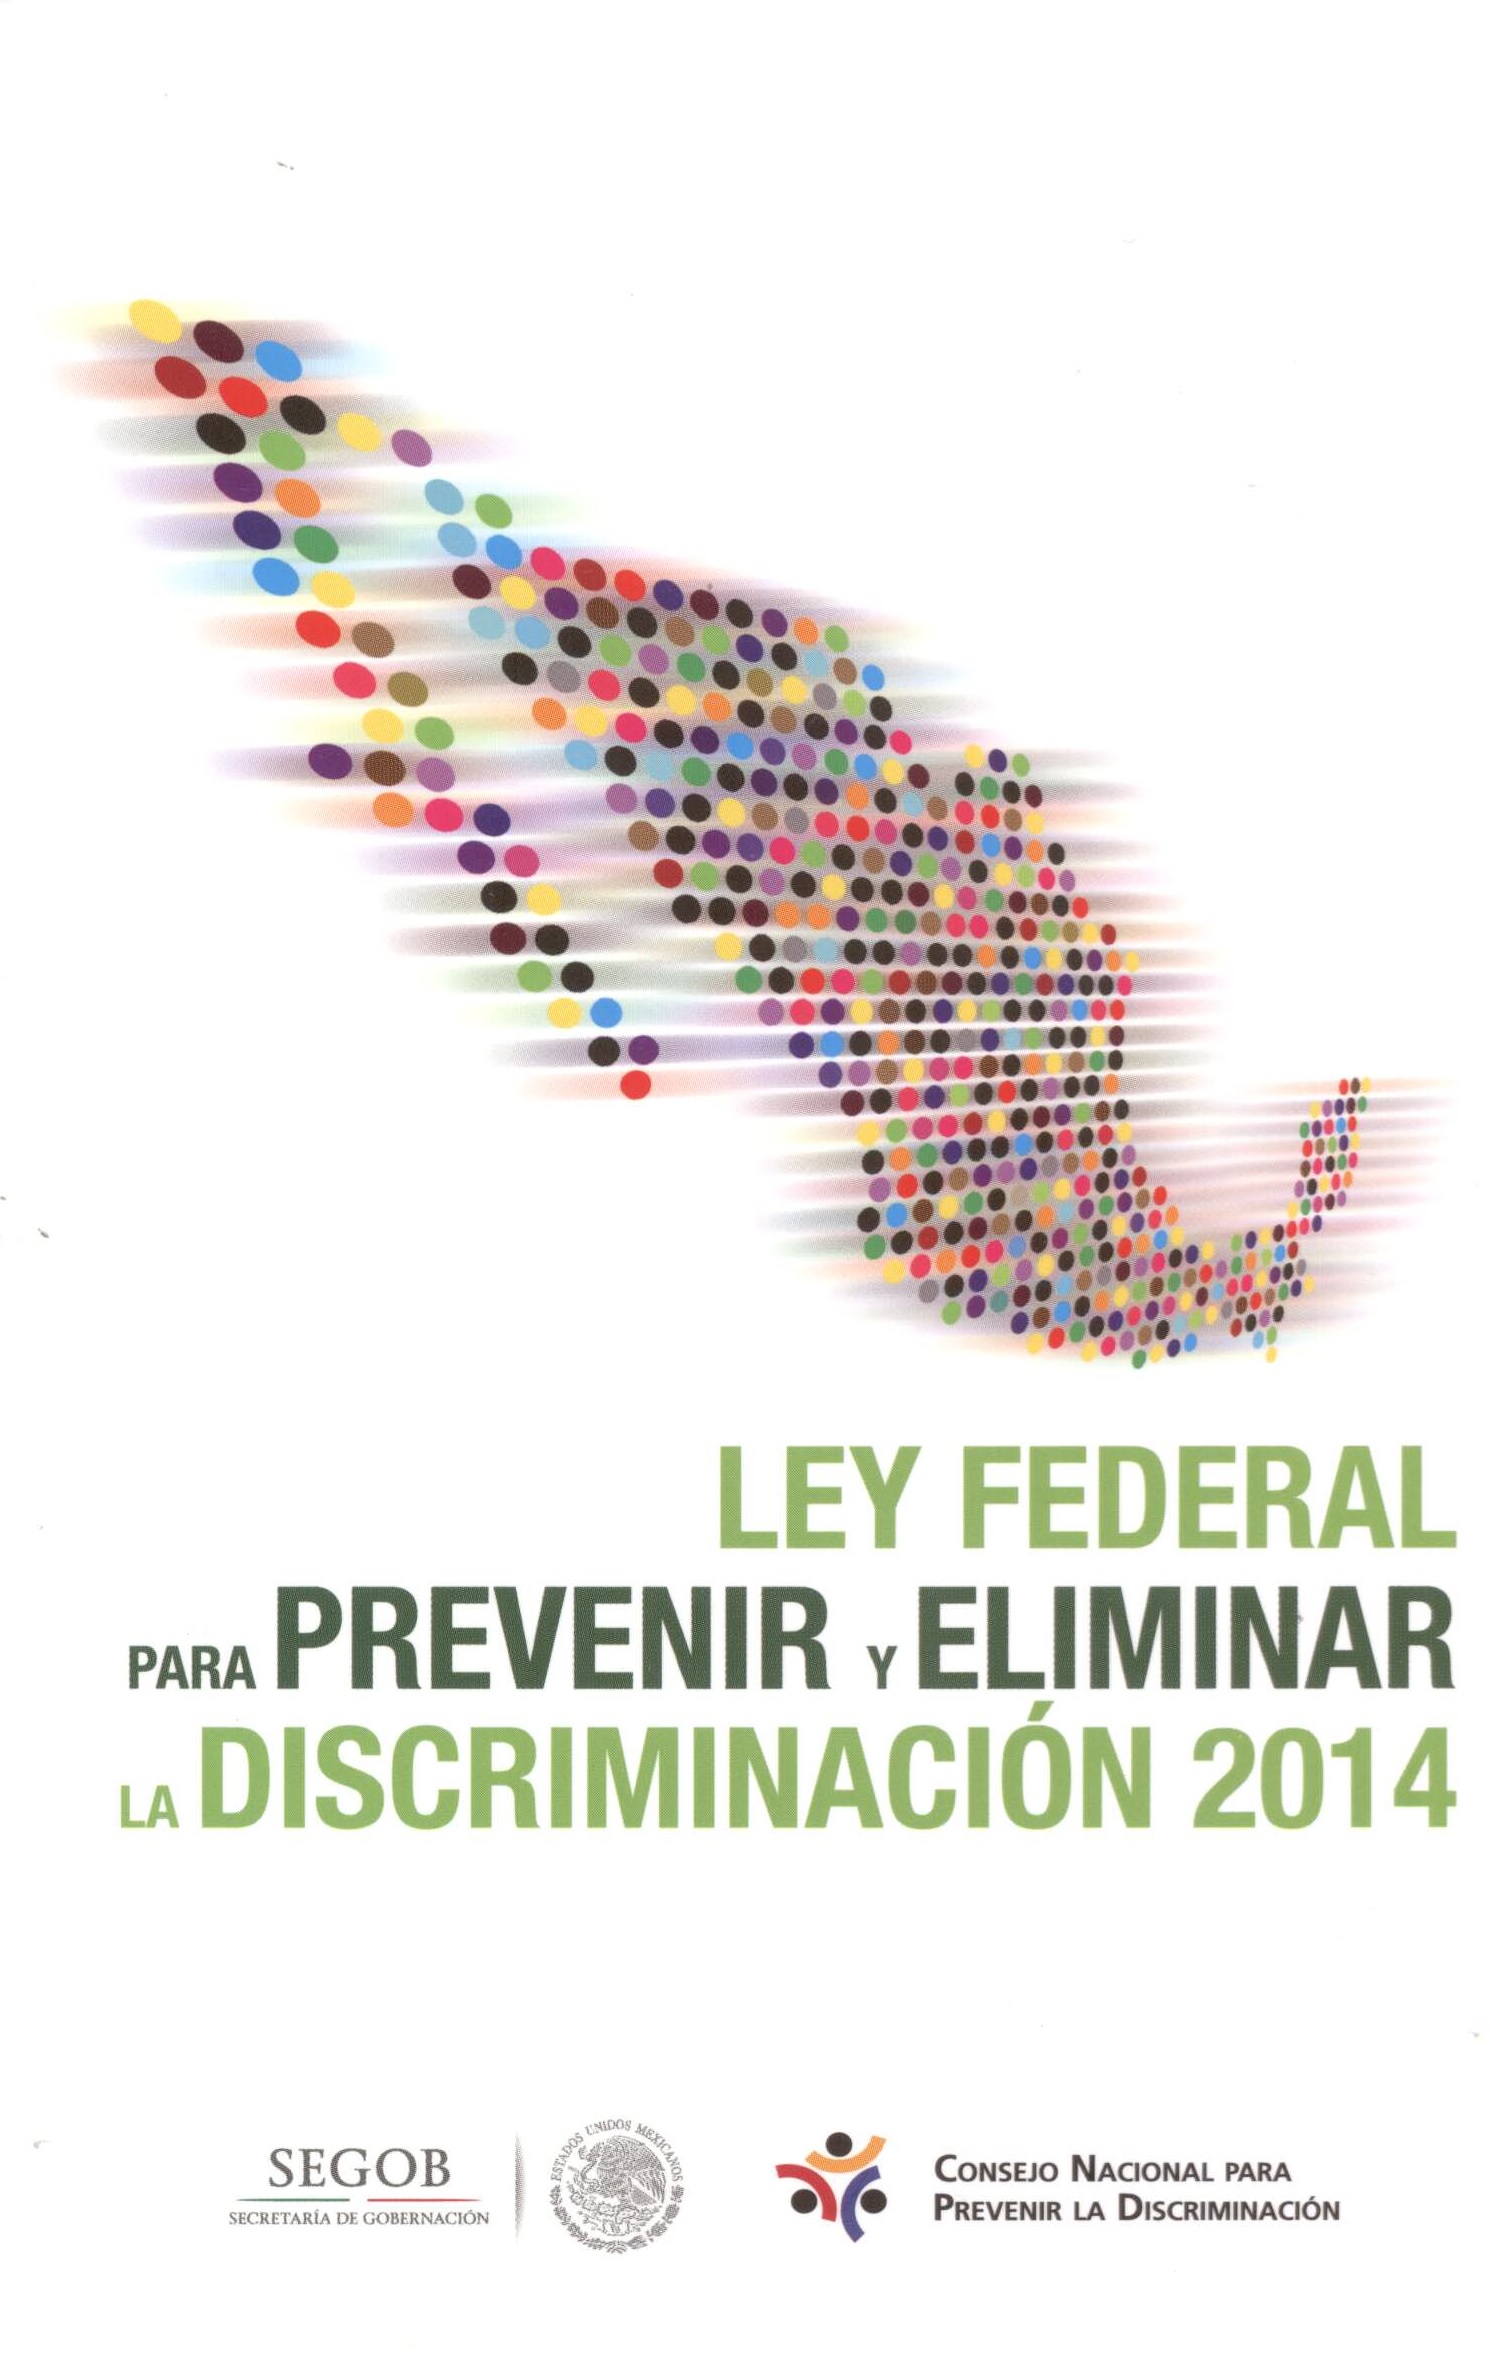 Ley federal para prevenir y eliminar la discriminación 2014